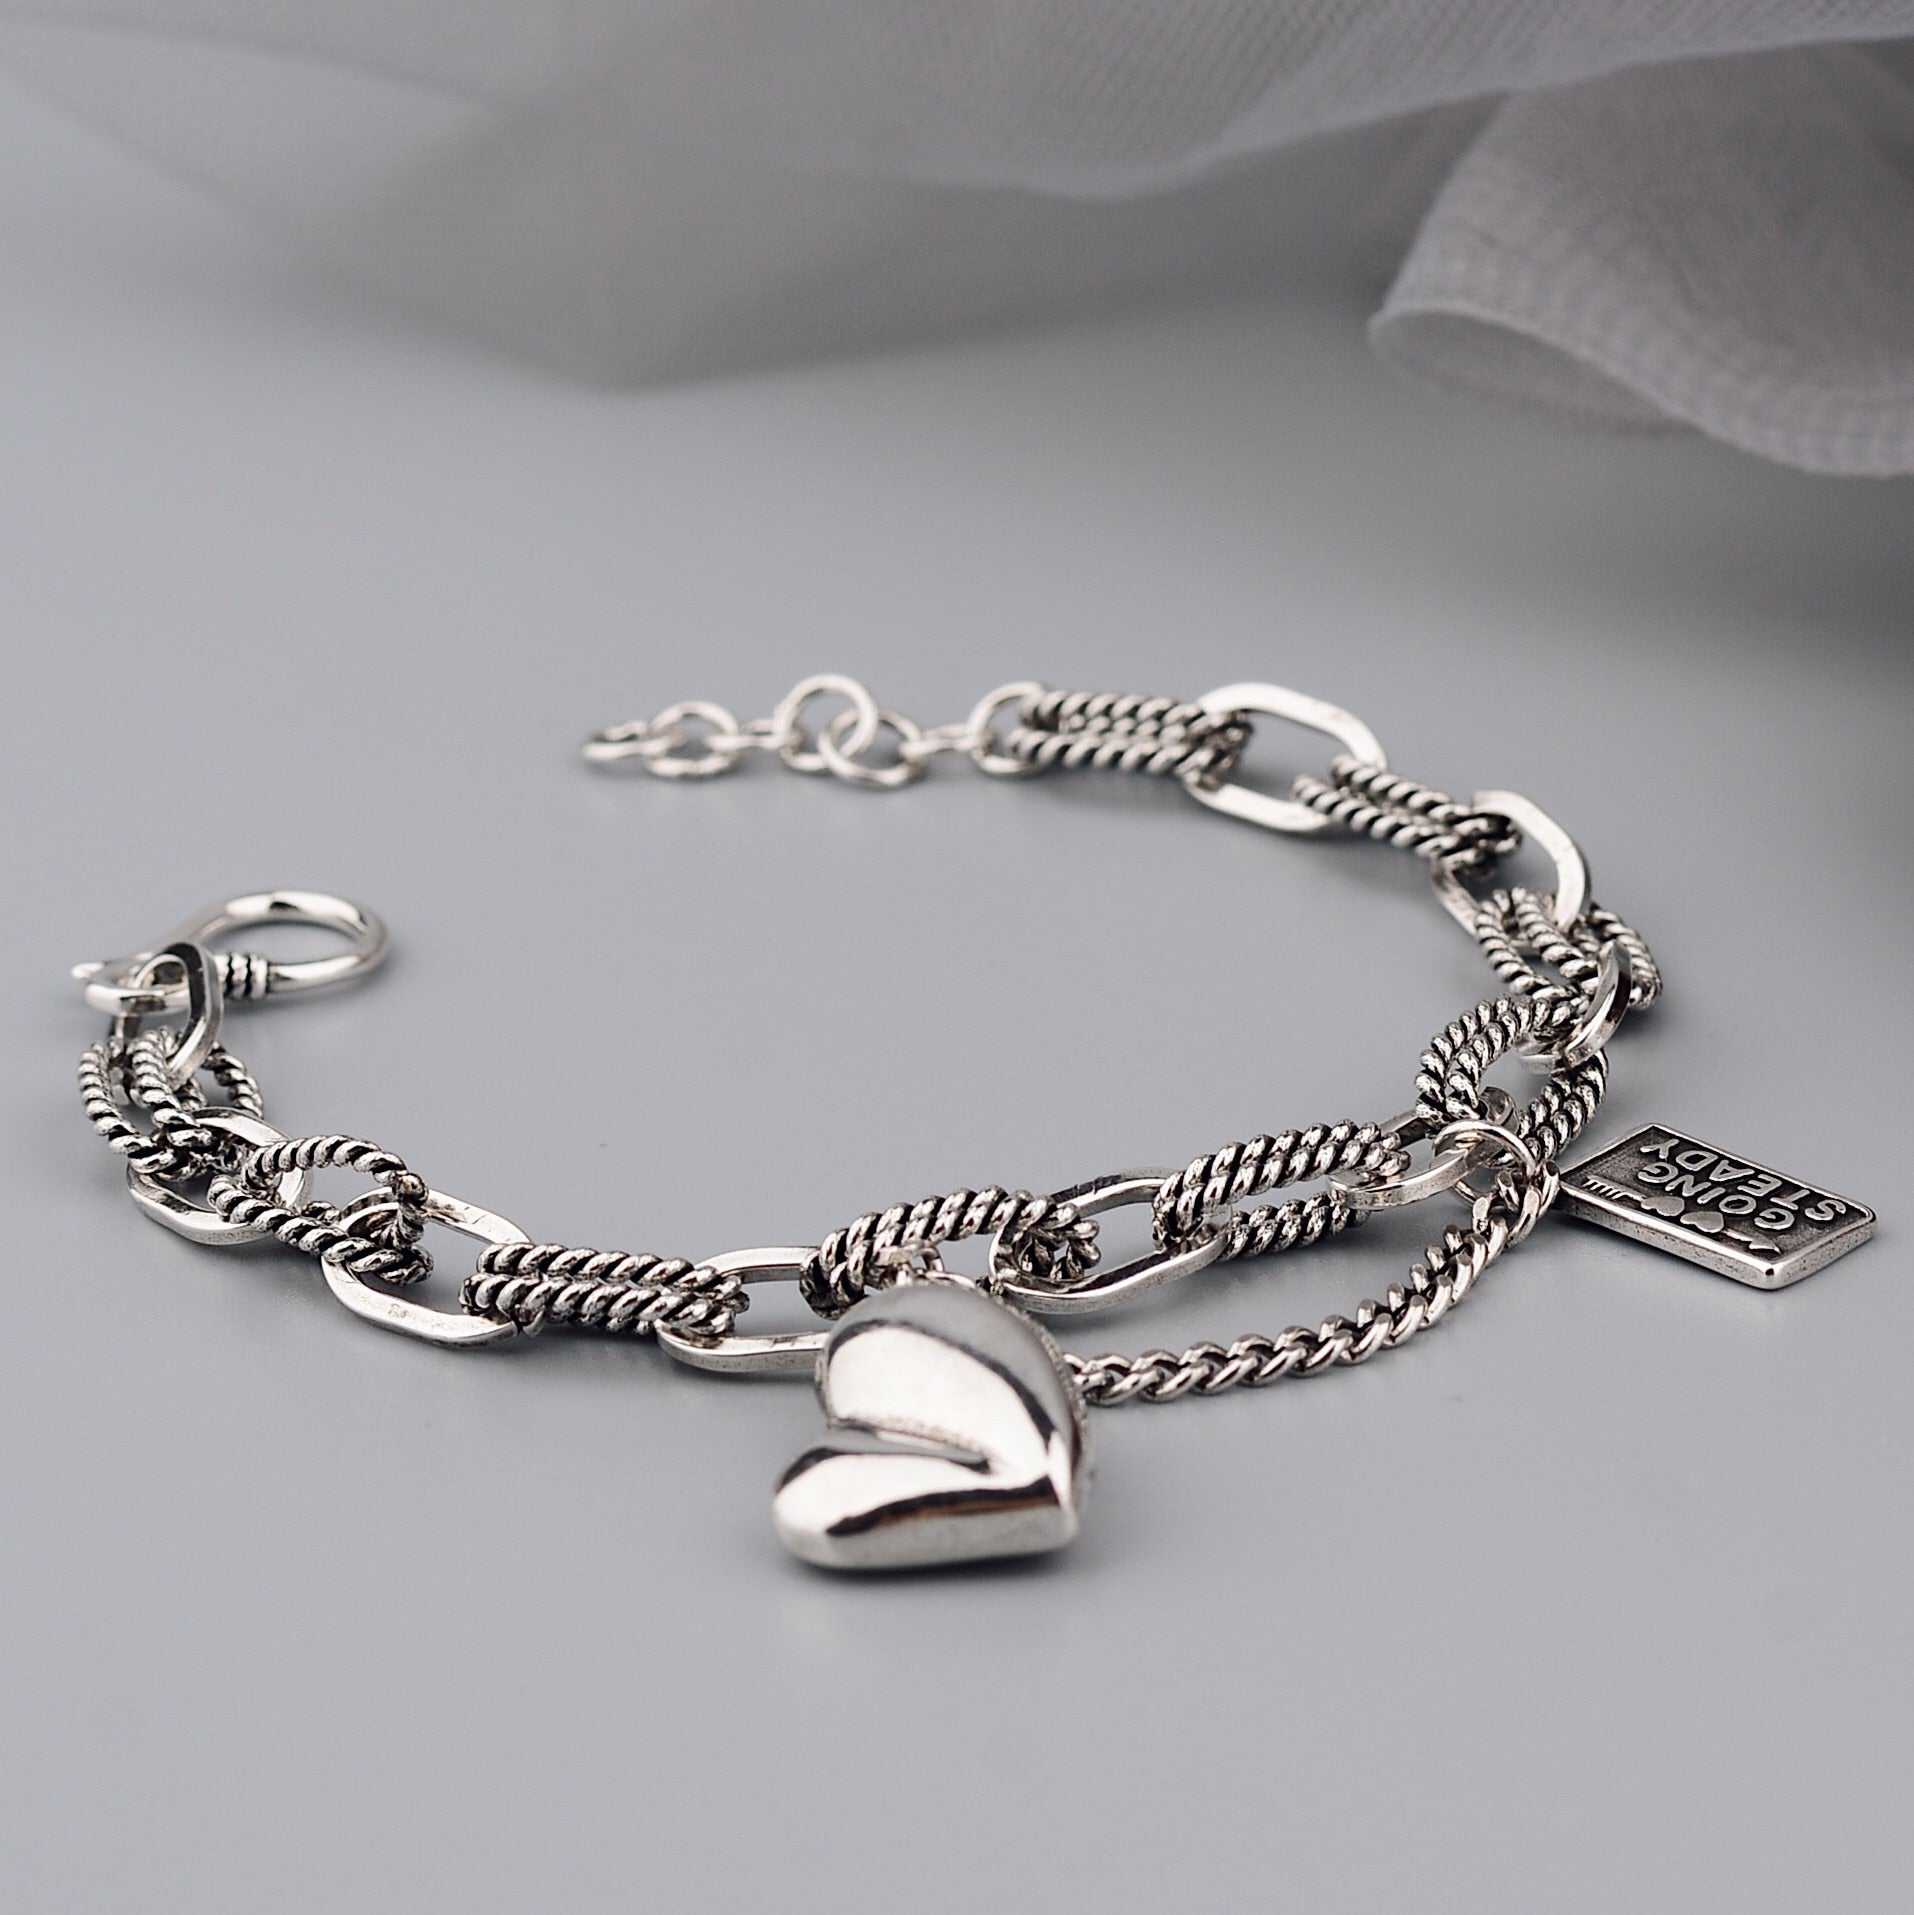 Jream Heart Bracelet - Zariar.comJream Heart BraceletZariar.comZariar.com200000226:29#Silver color|200000226:29#Silver color